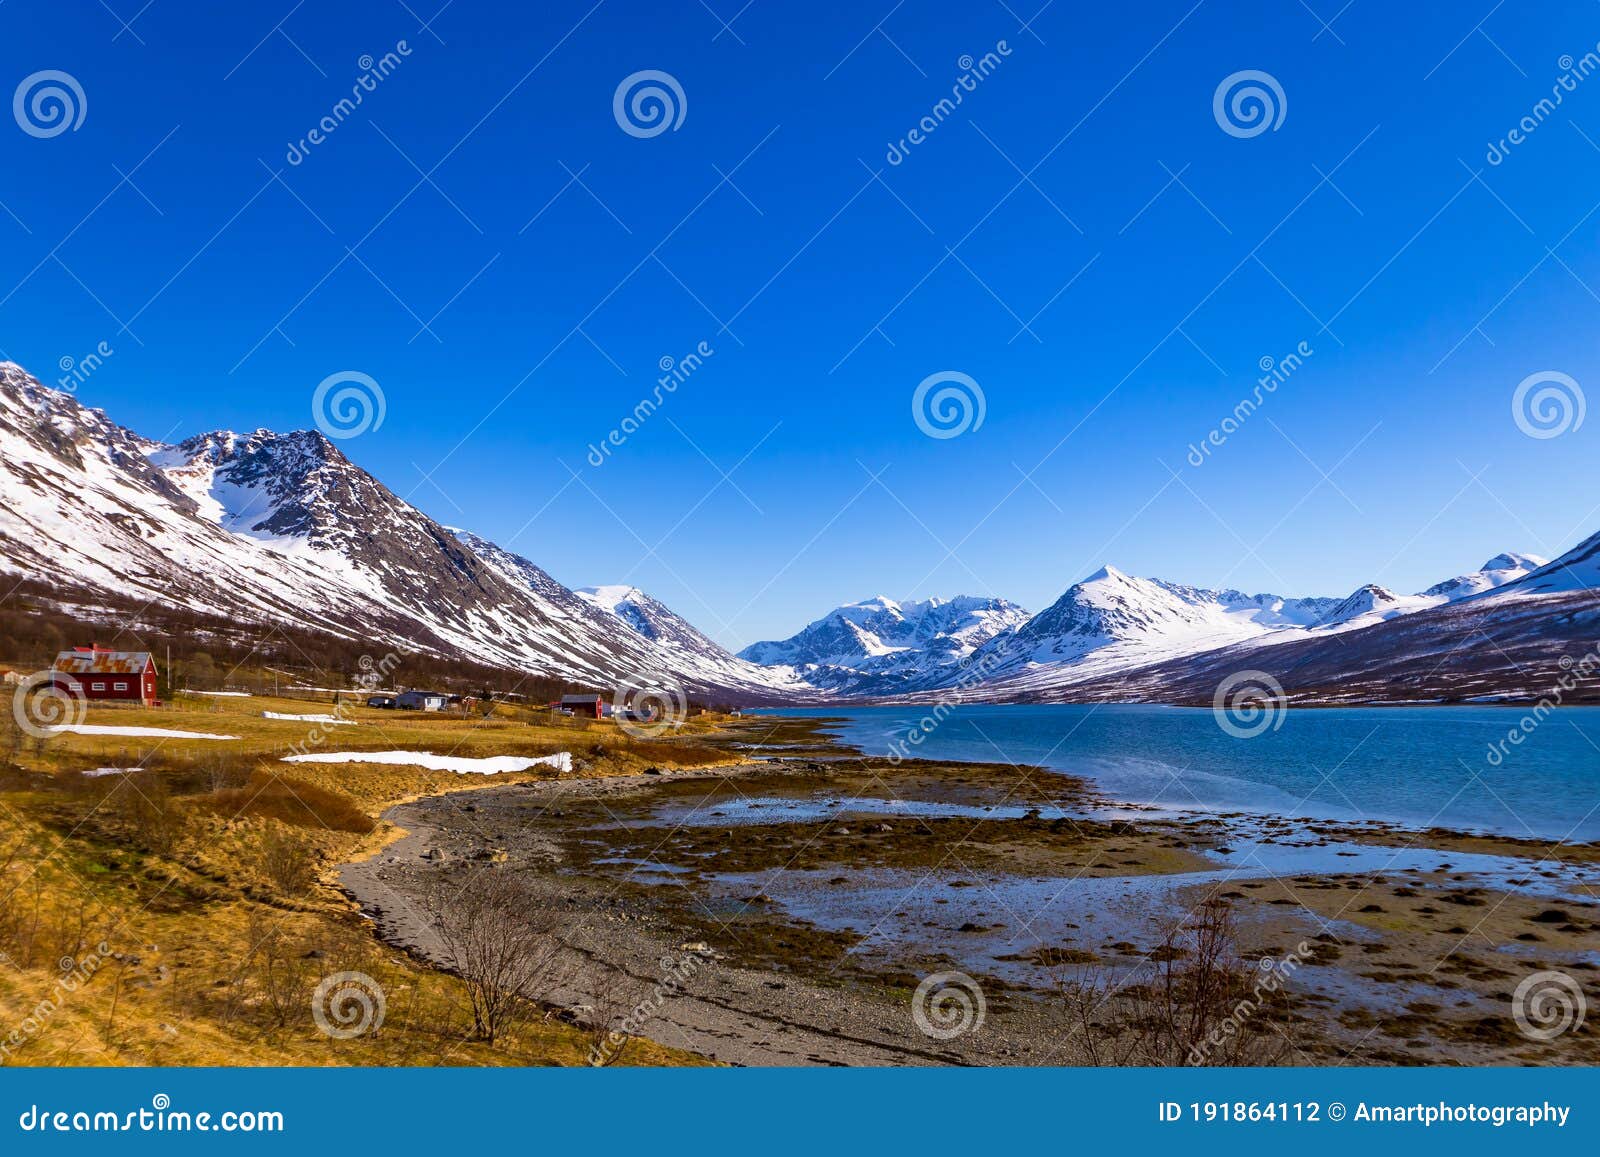 Paisagens naturais deslumbrantes da escandinávia vistas de cima